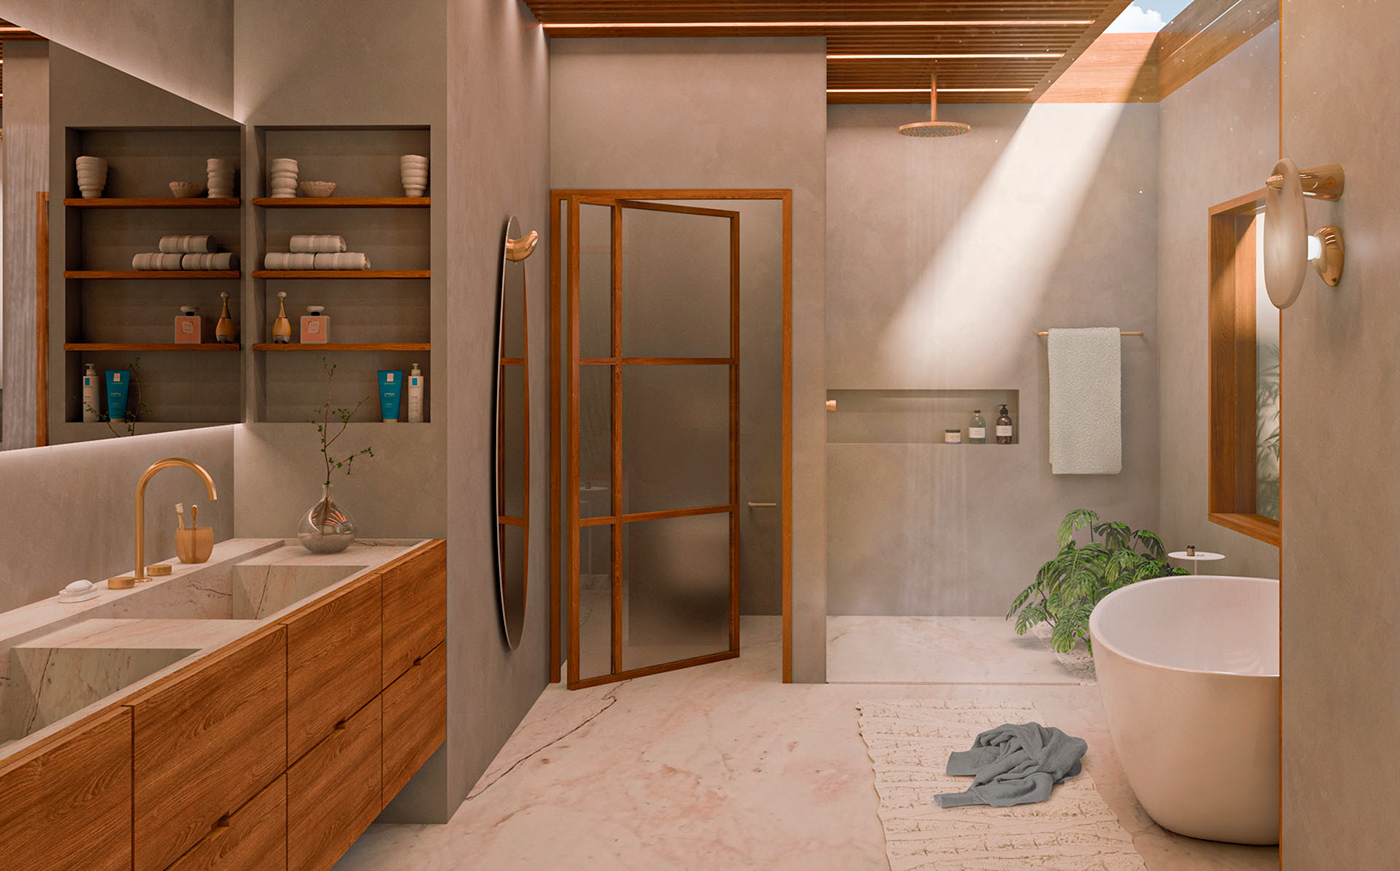 architecture arquitetura de interiores bath bathroom bathroomdesign bathtub design Interior Joinery wood